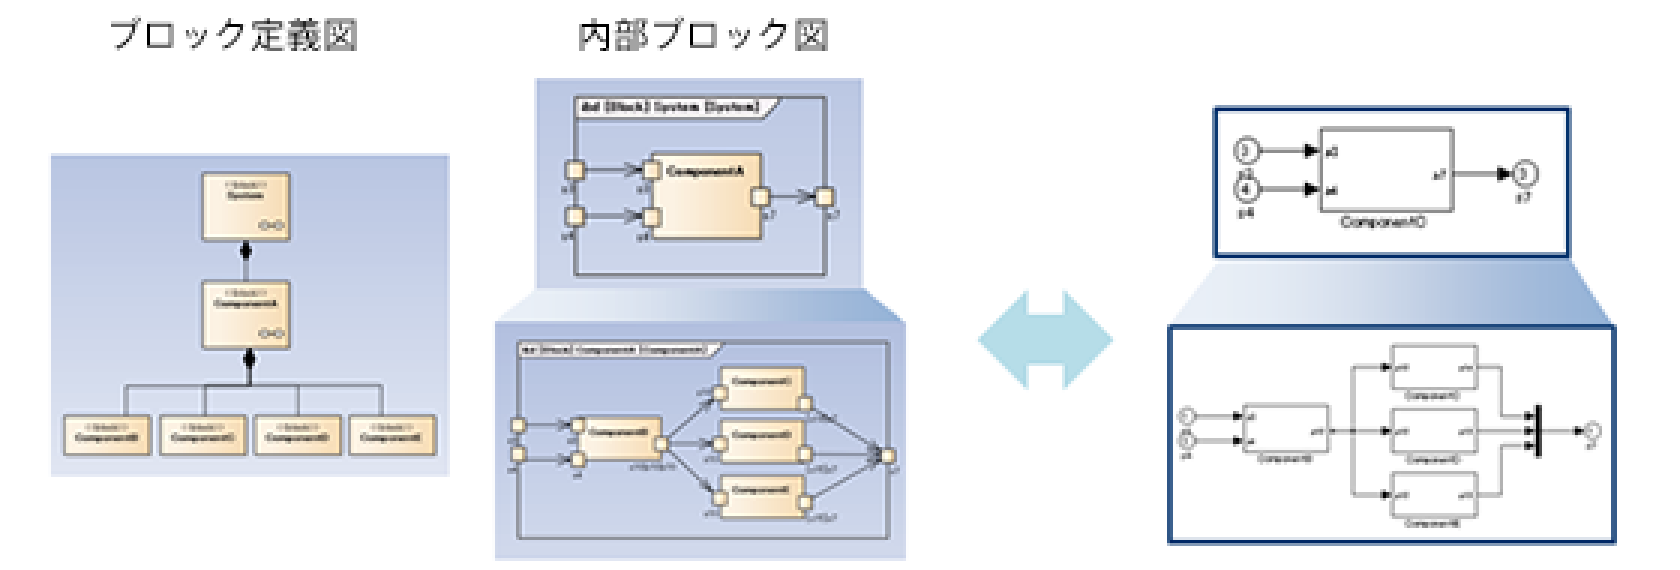 SysML･UML・DFD（データフローダイアグラム図）等の汎用モデリング言語で記述されたアーキテクチャモデルと、MATLAB／Simulink のモデルを相互に変換するモデル変換ツール『mtrip』SysML